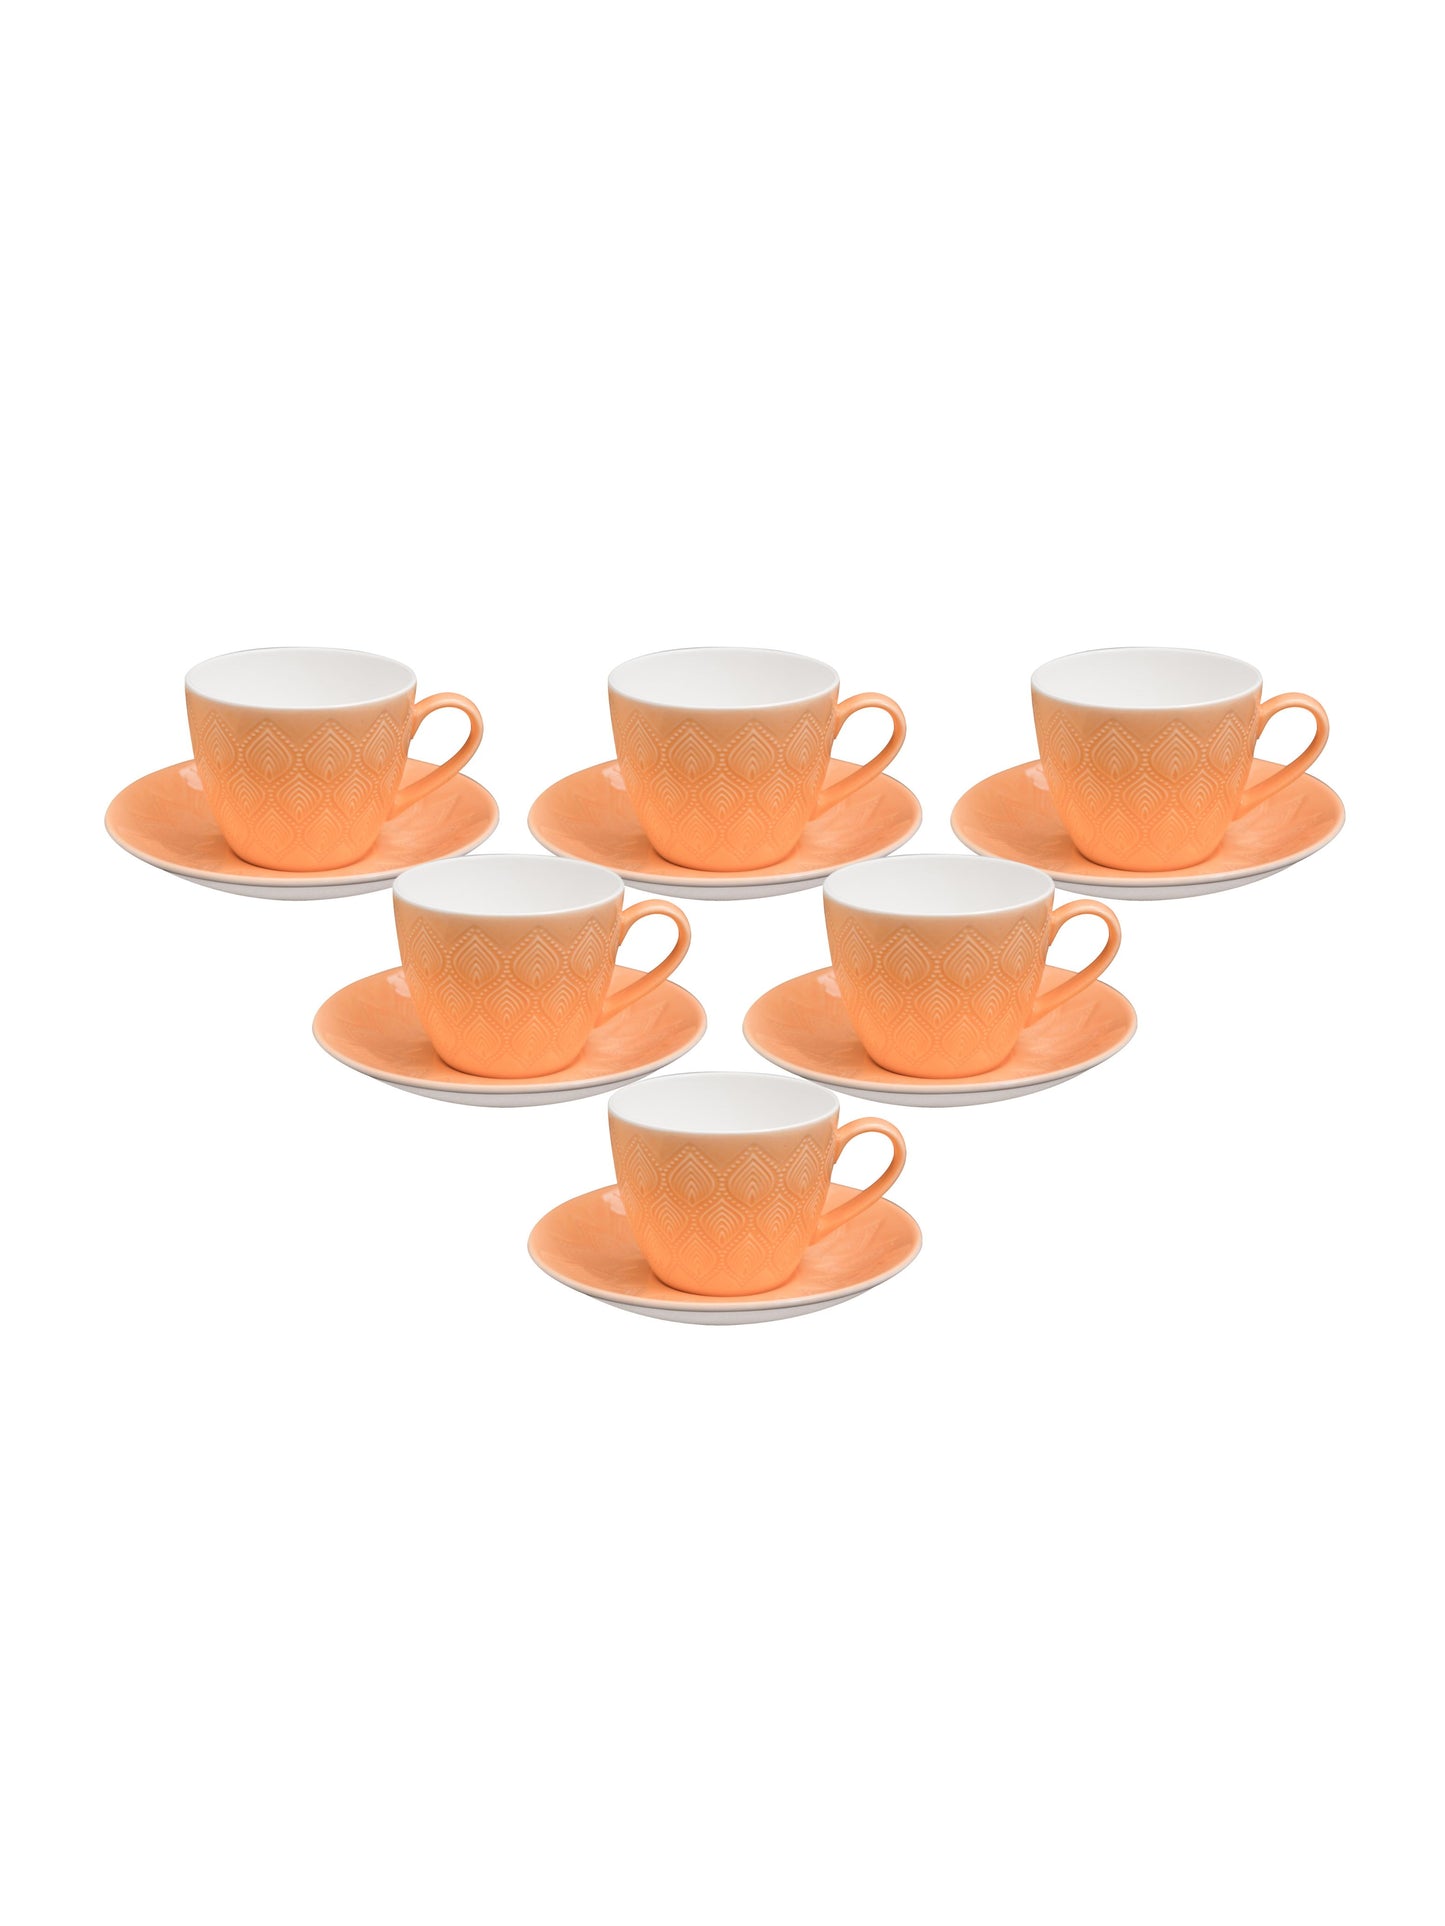 JCPL Feast Kohinoor Cup & Saucer, 170ml, Set of 12 (6 Cups + 6 Saucers) (ORANGE)